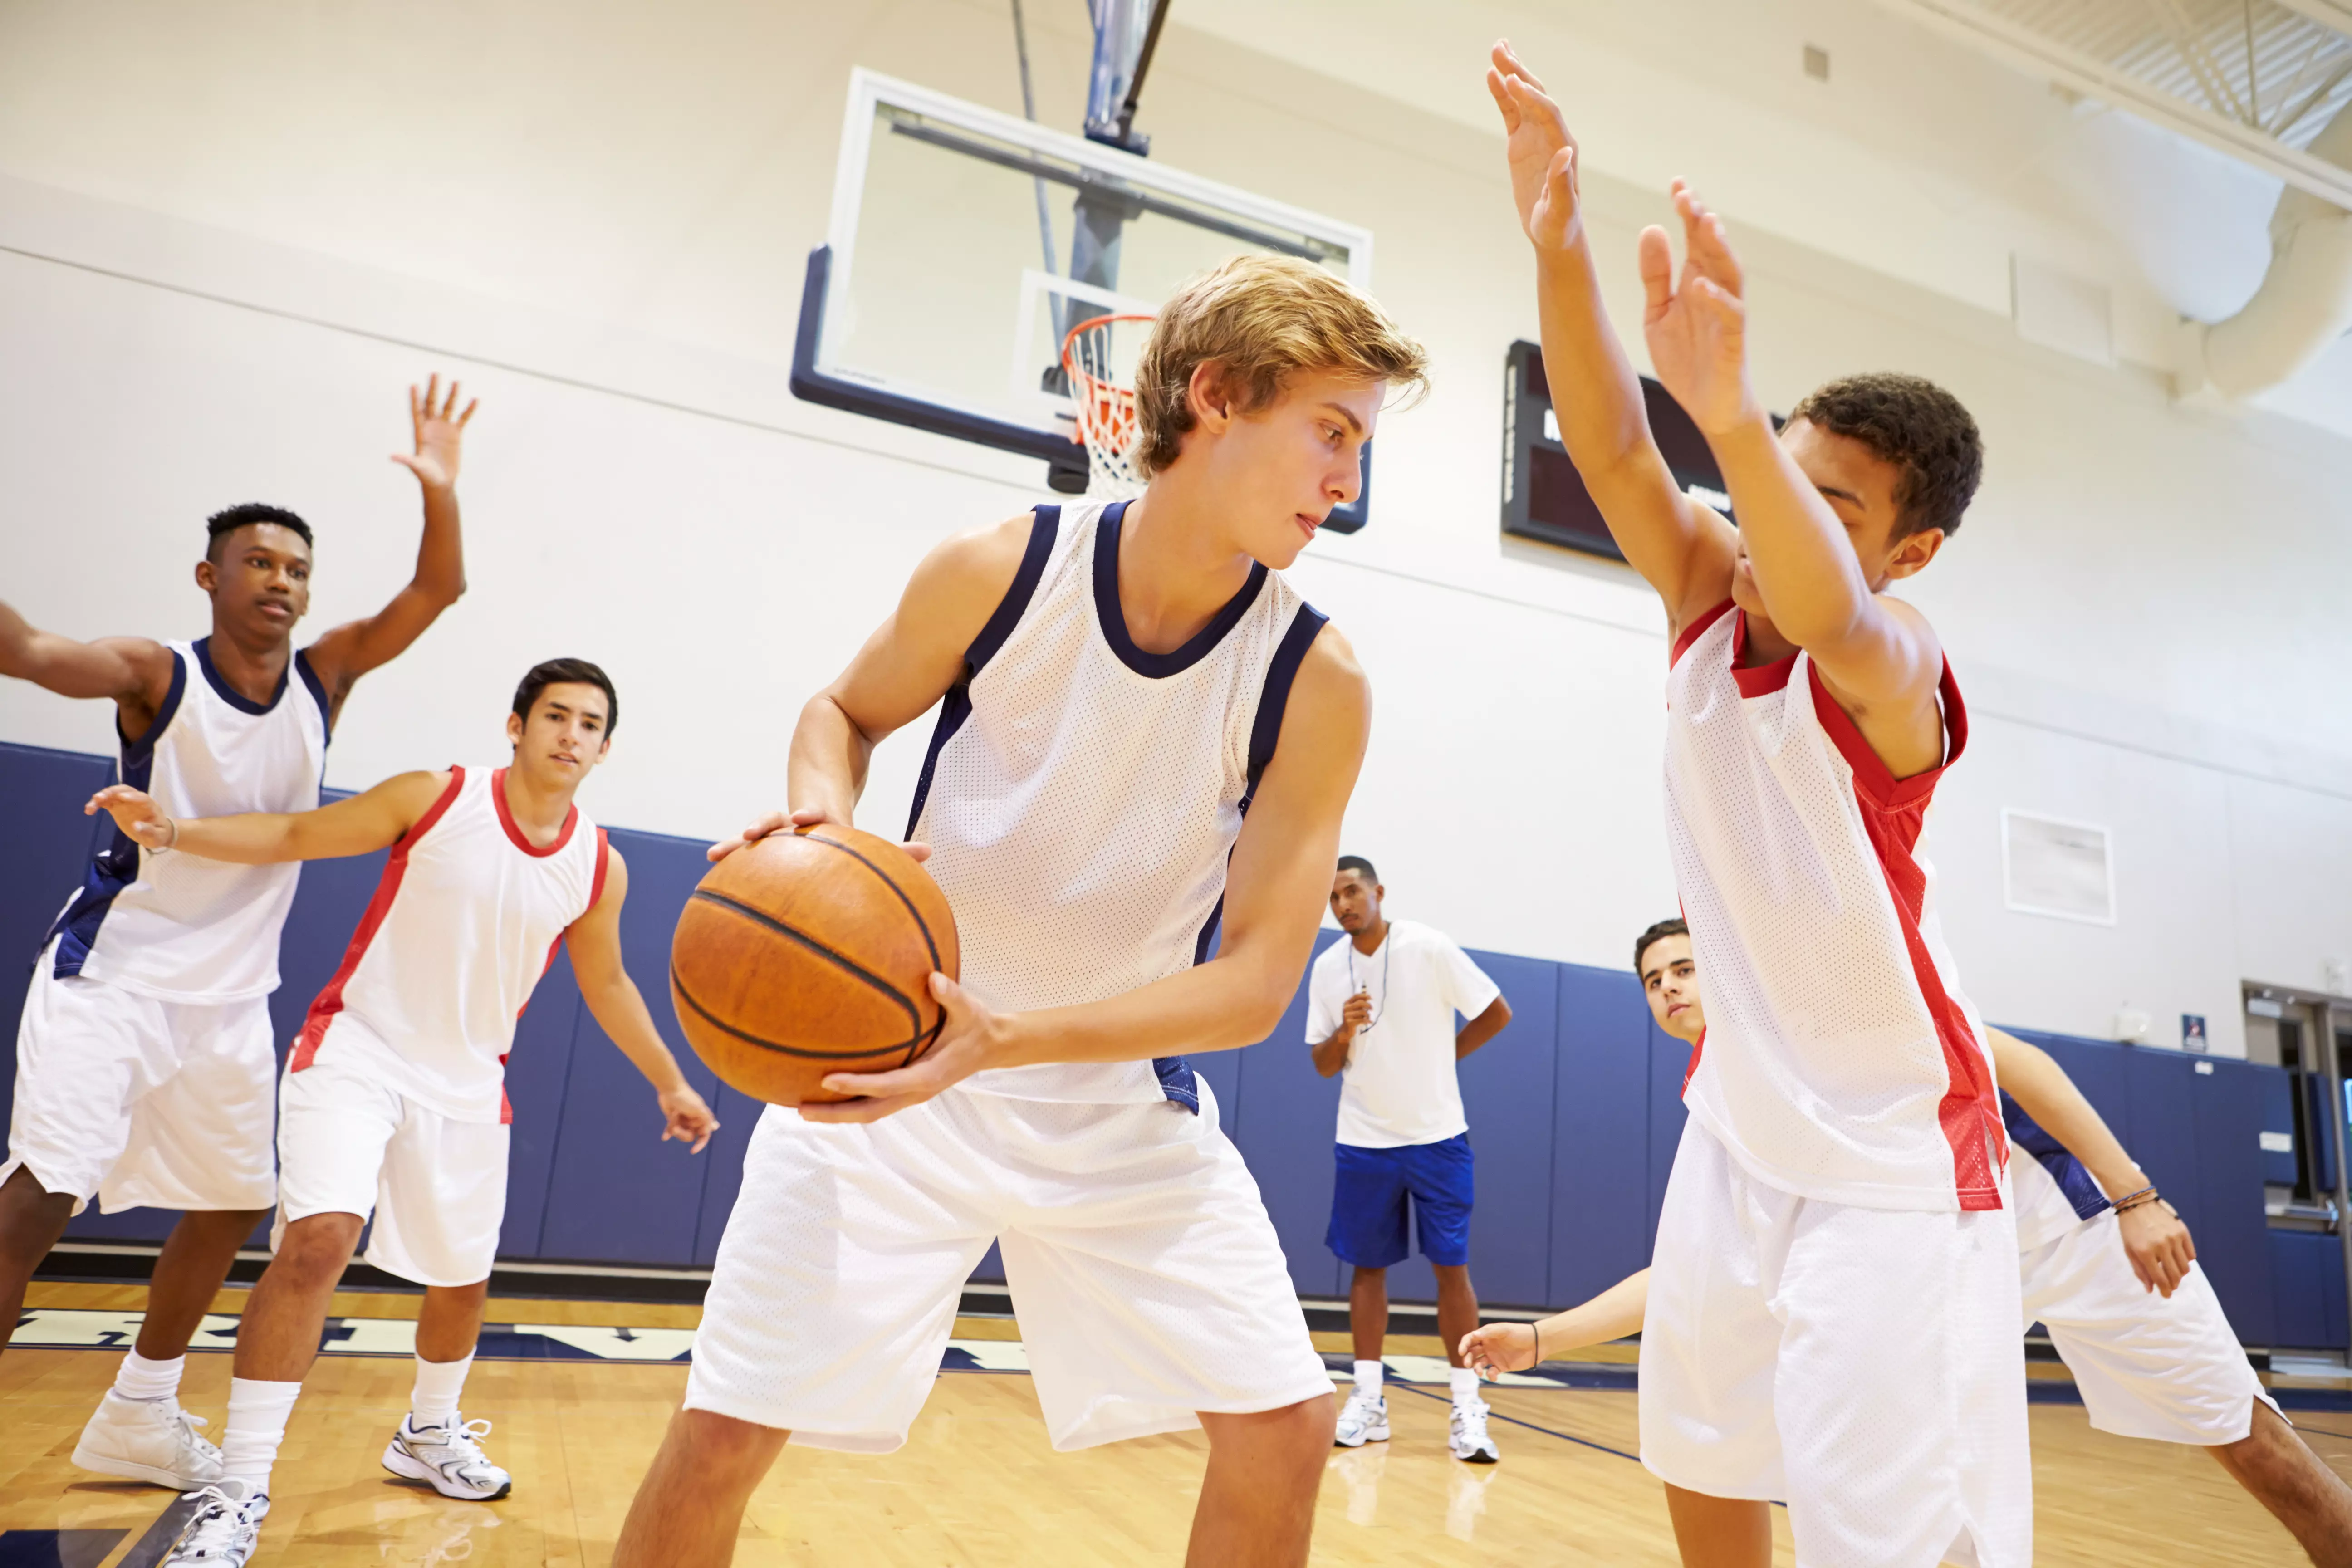 Баскетболом занимается 48 человек. Занятия по баскетболу. Тренировка по баскетболу. Баскетбол в школе изображение. Картинки по баскетболу для школьников.